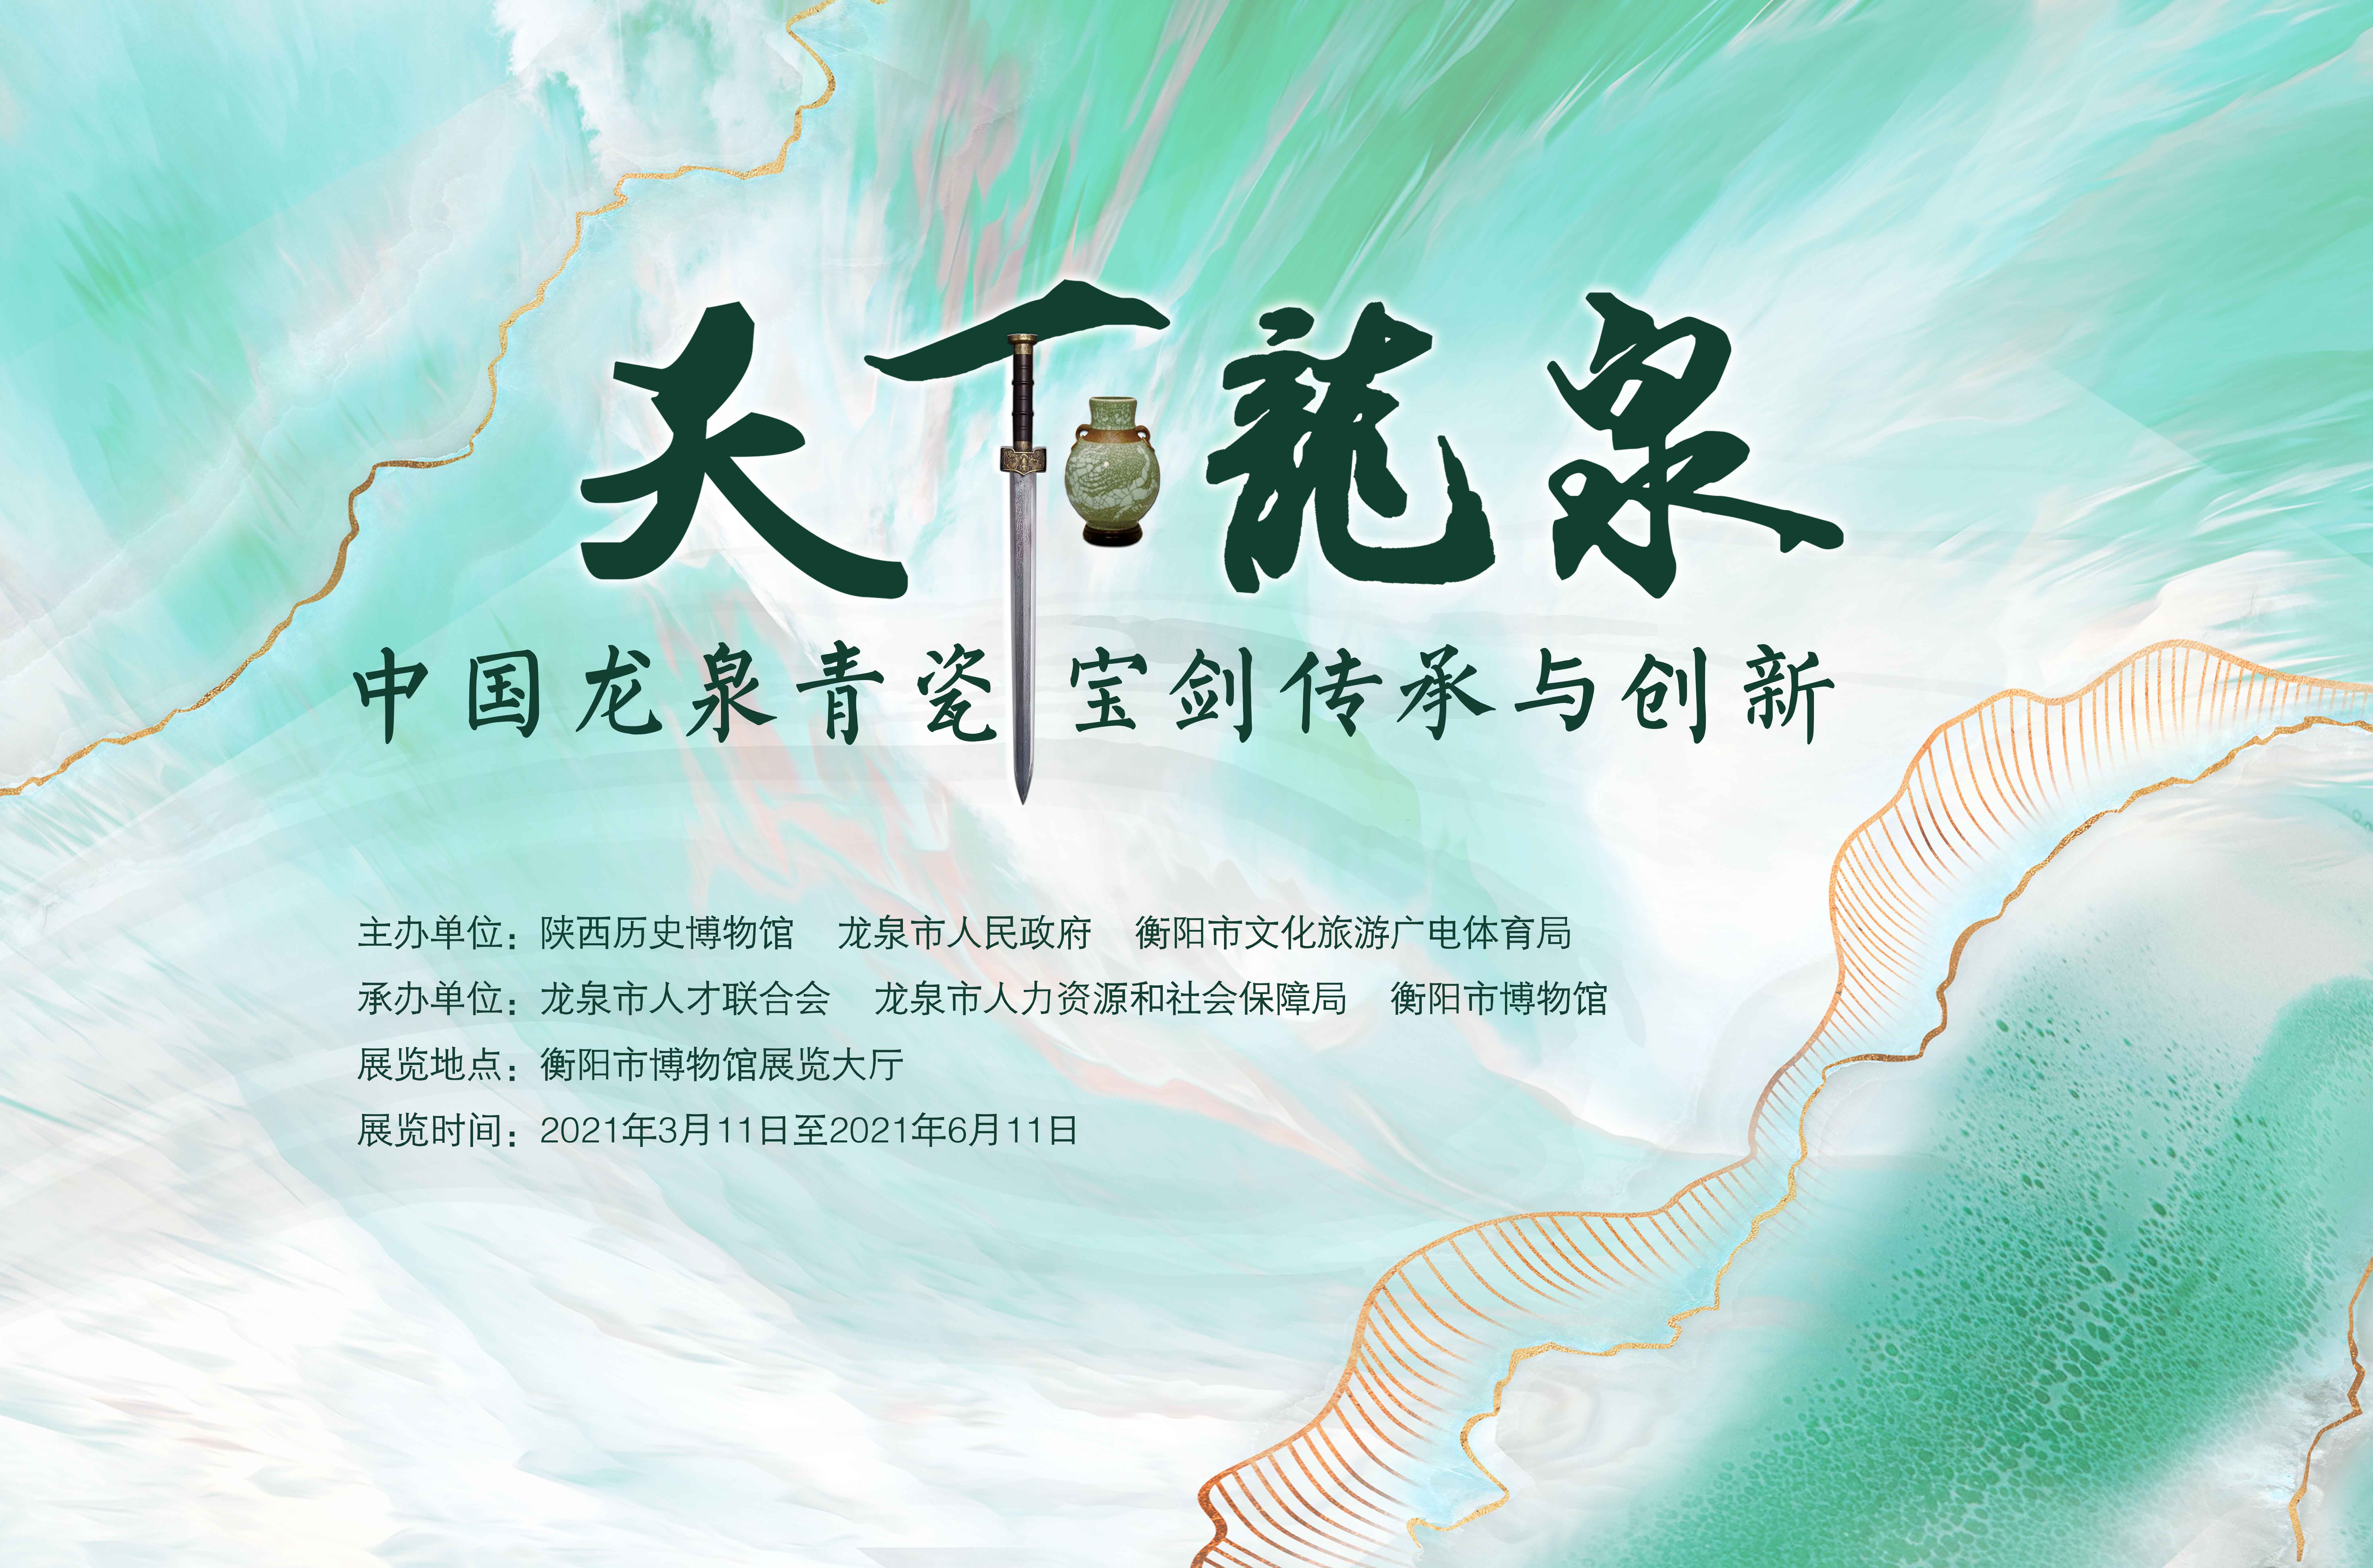 天下龍泉-中国龙泉青瓷宝剑传承与创新